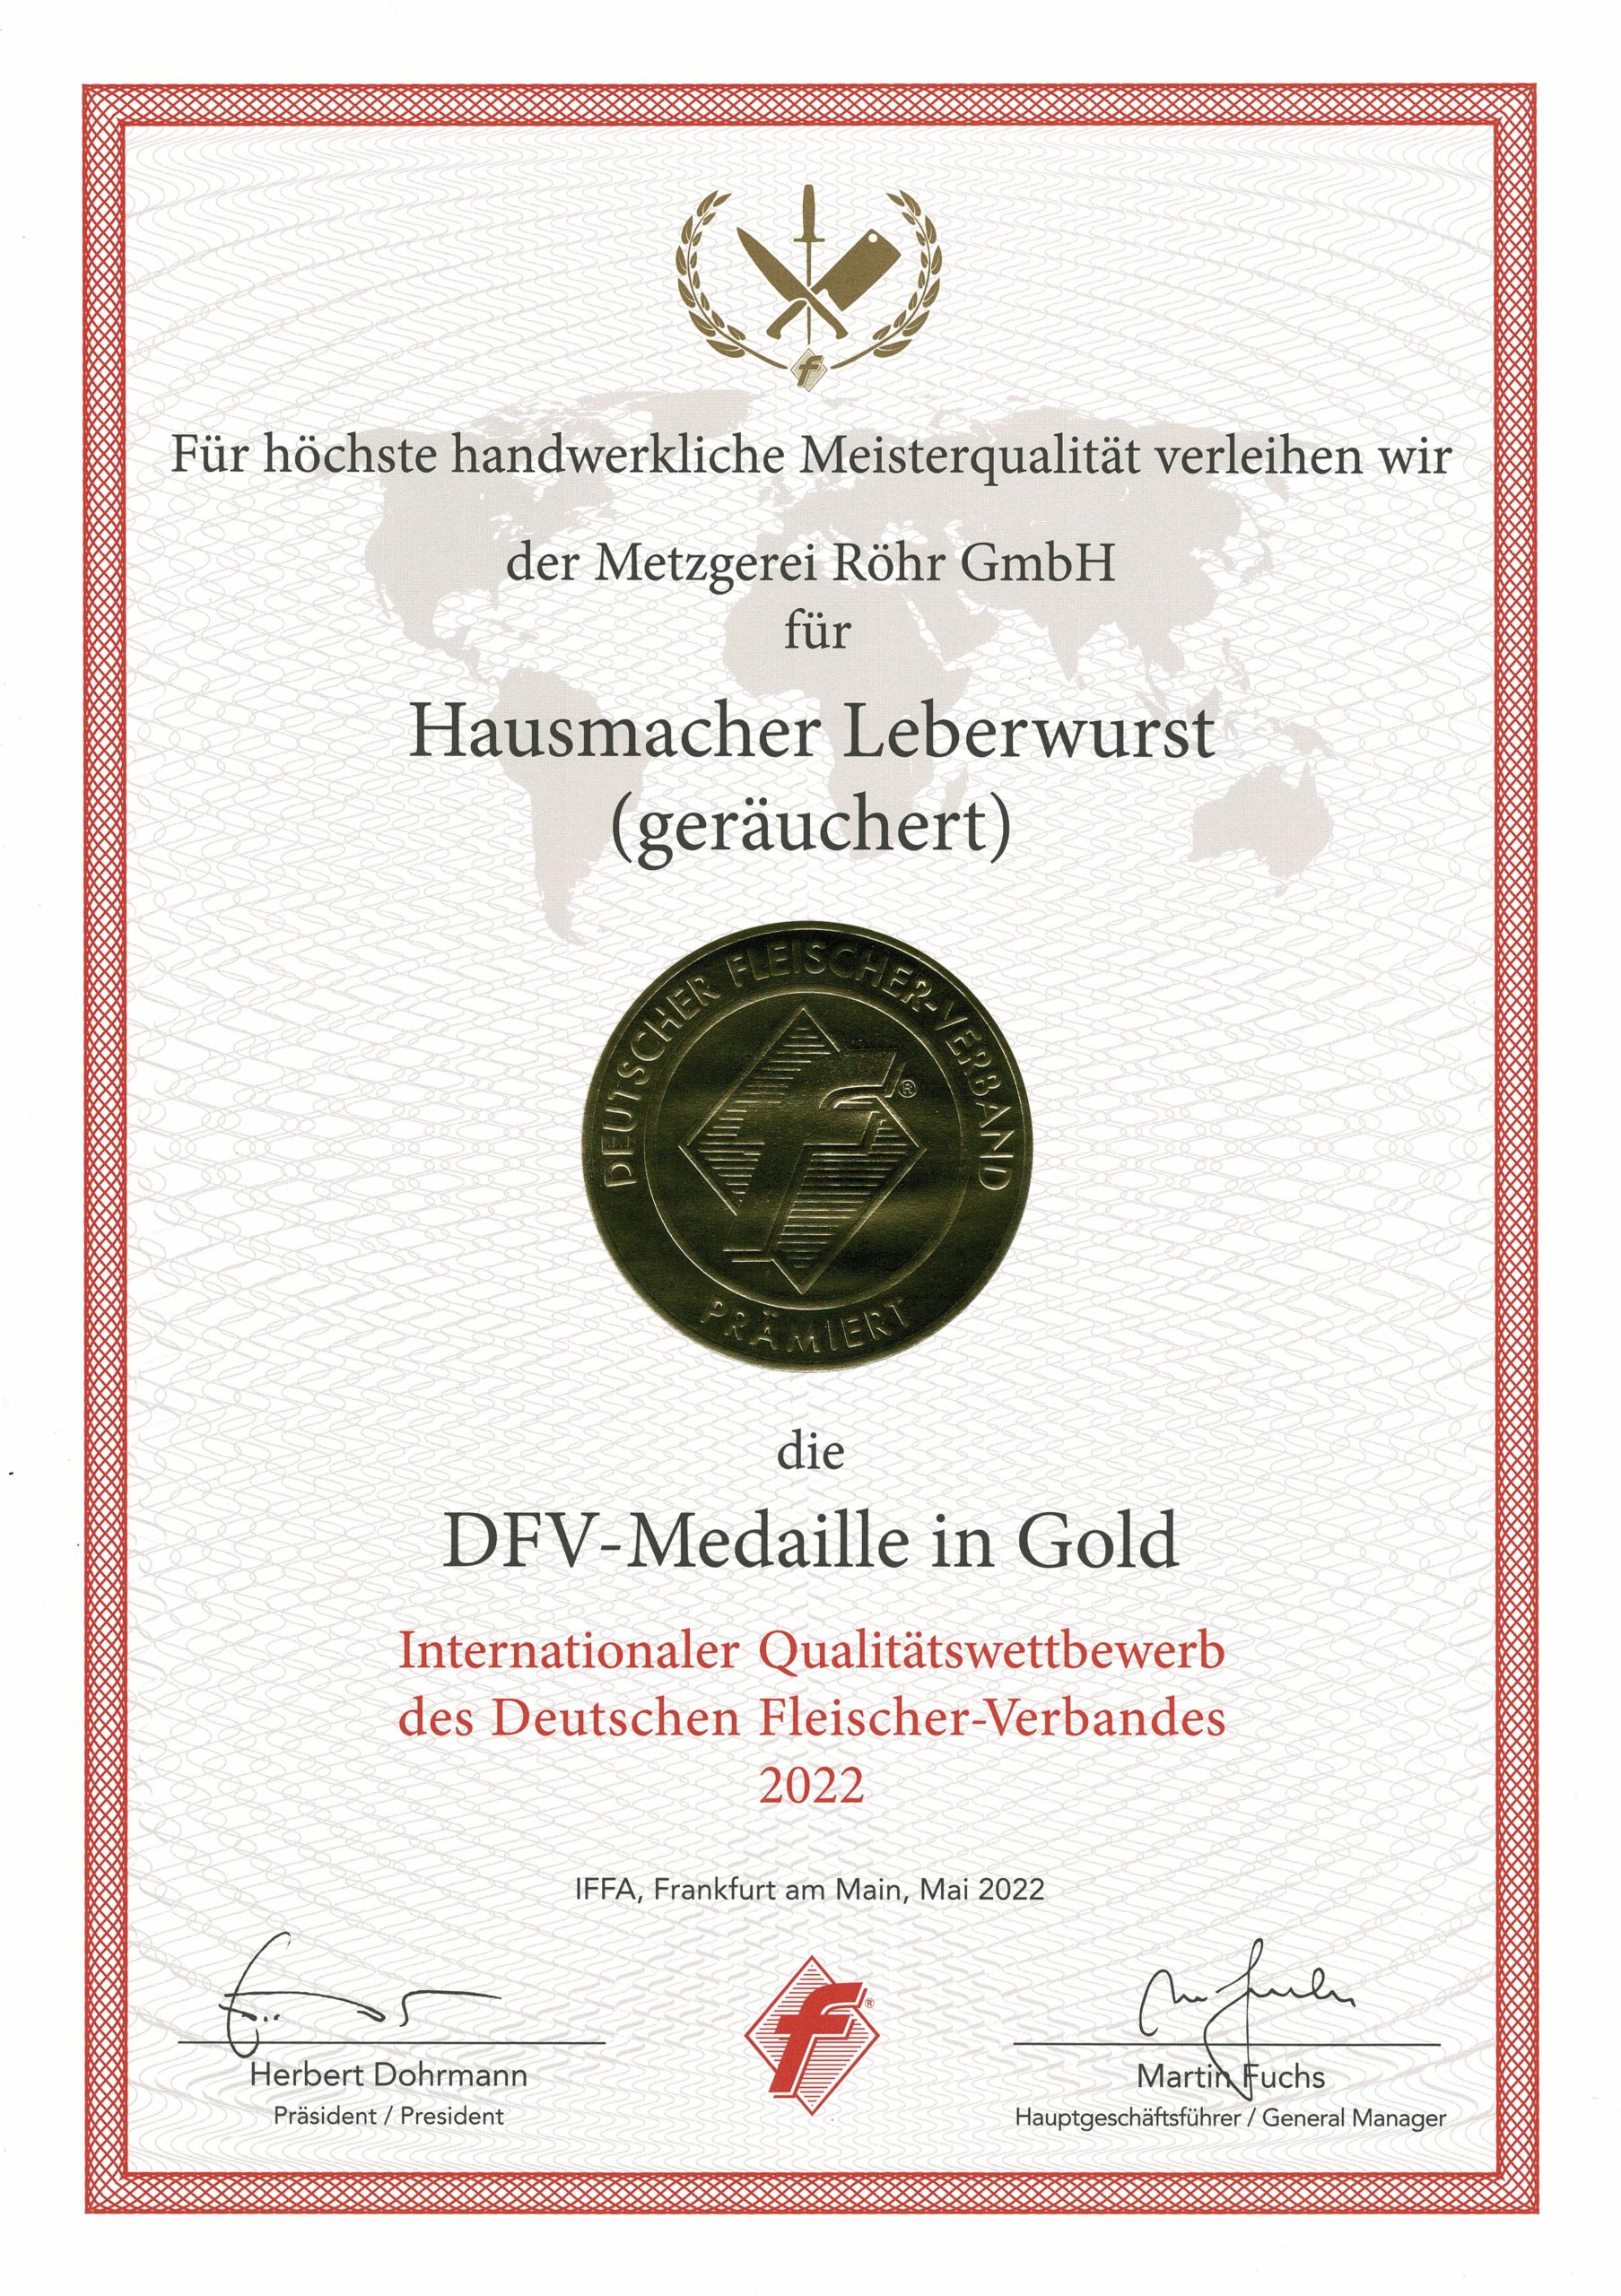 DFV-Medaille in Gold für Hausmacher Leberwurst